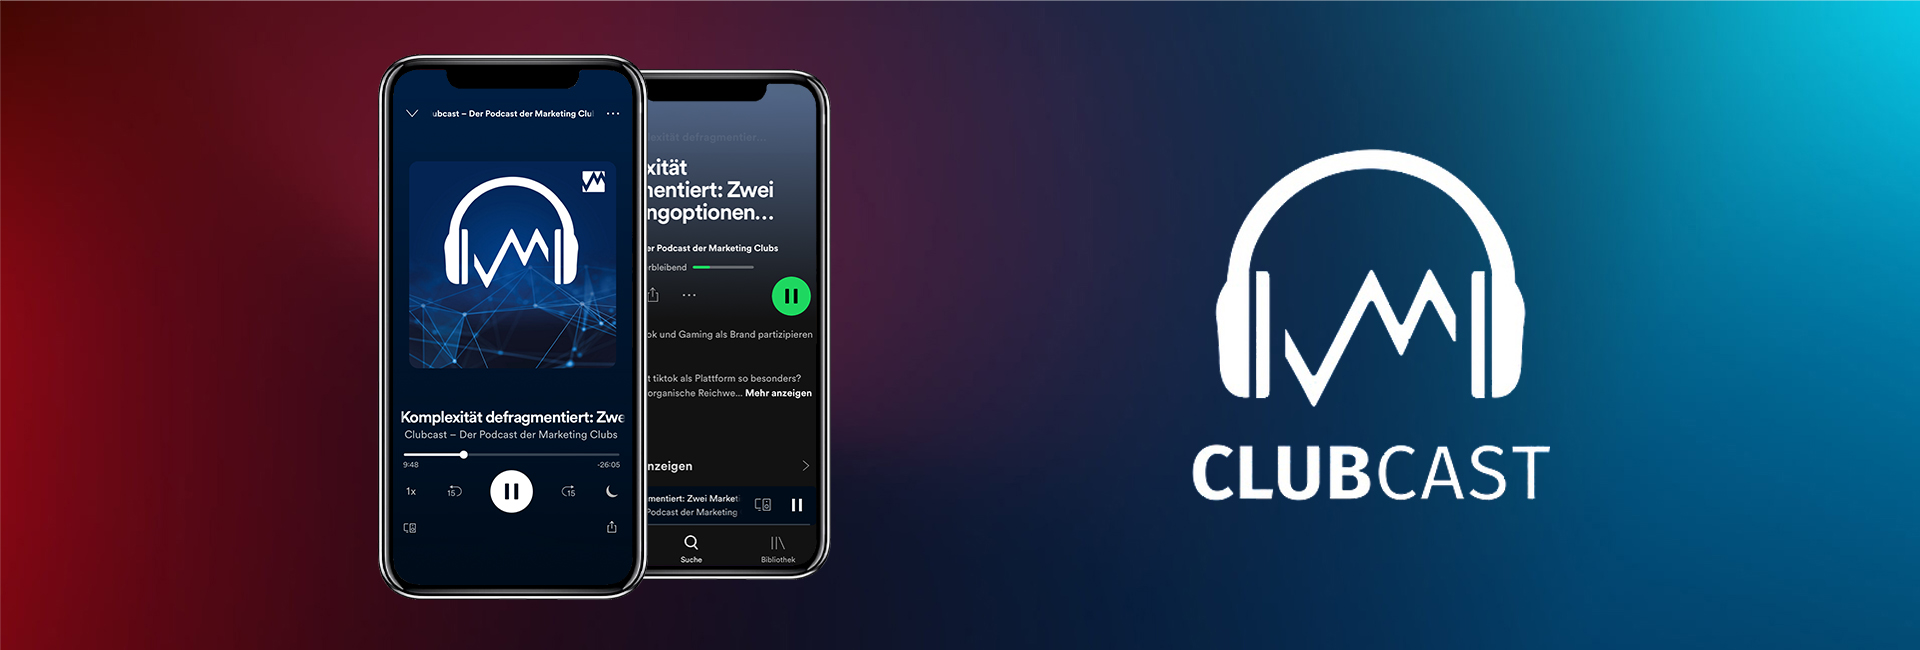 Marketing Club Podcast Clubcast